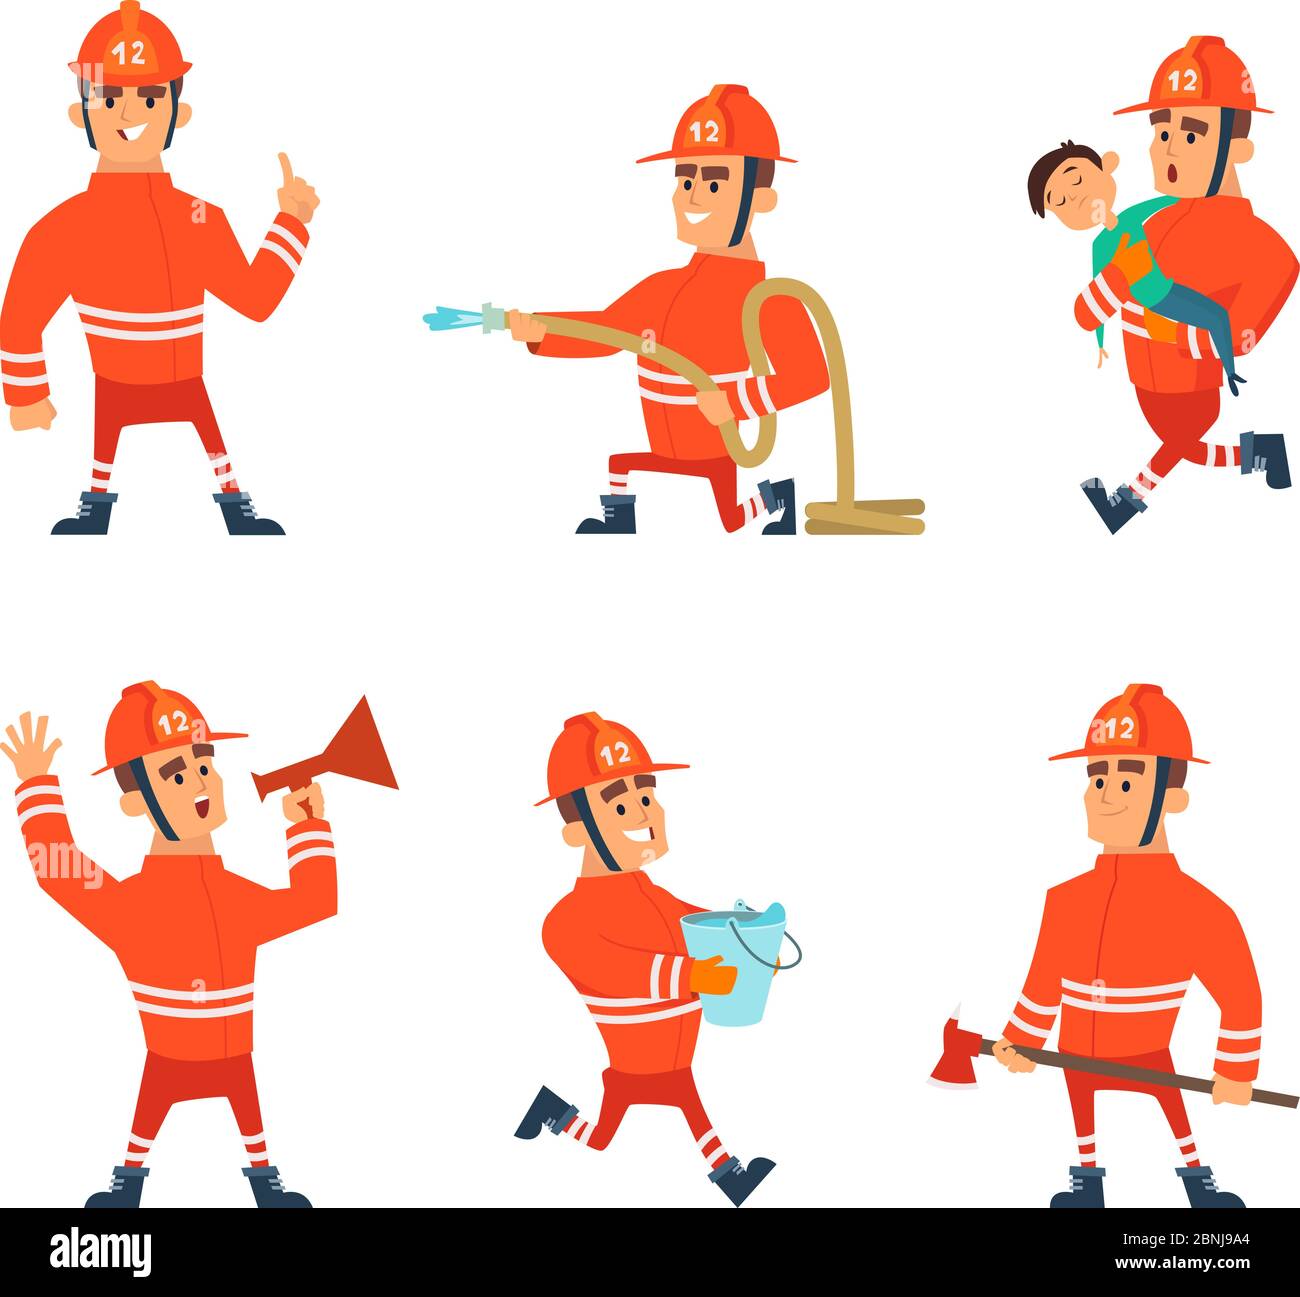 Les personnages de dessins animés des pompiers en action se posent Illustration de Vecteur